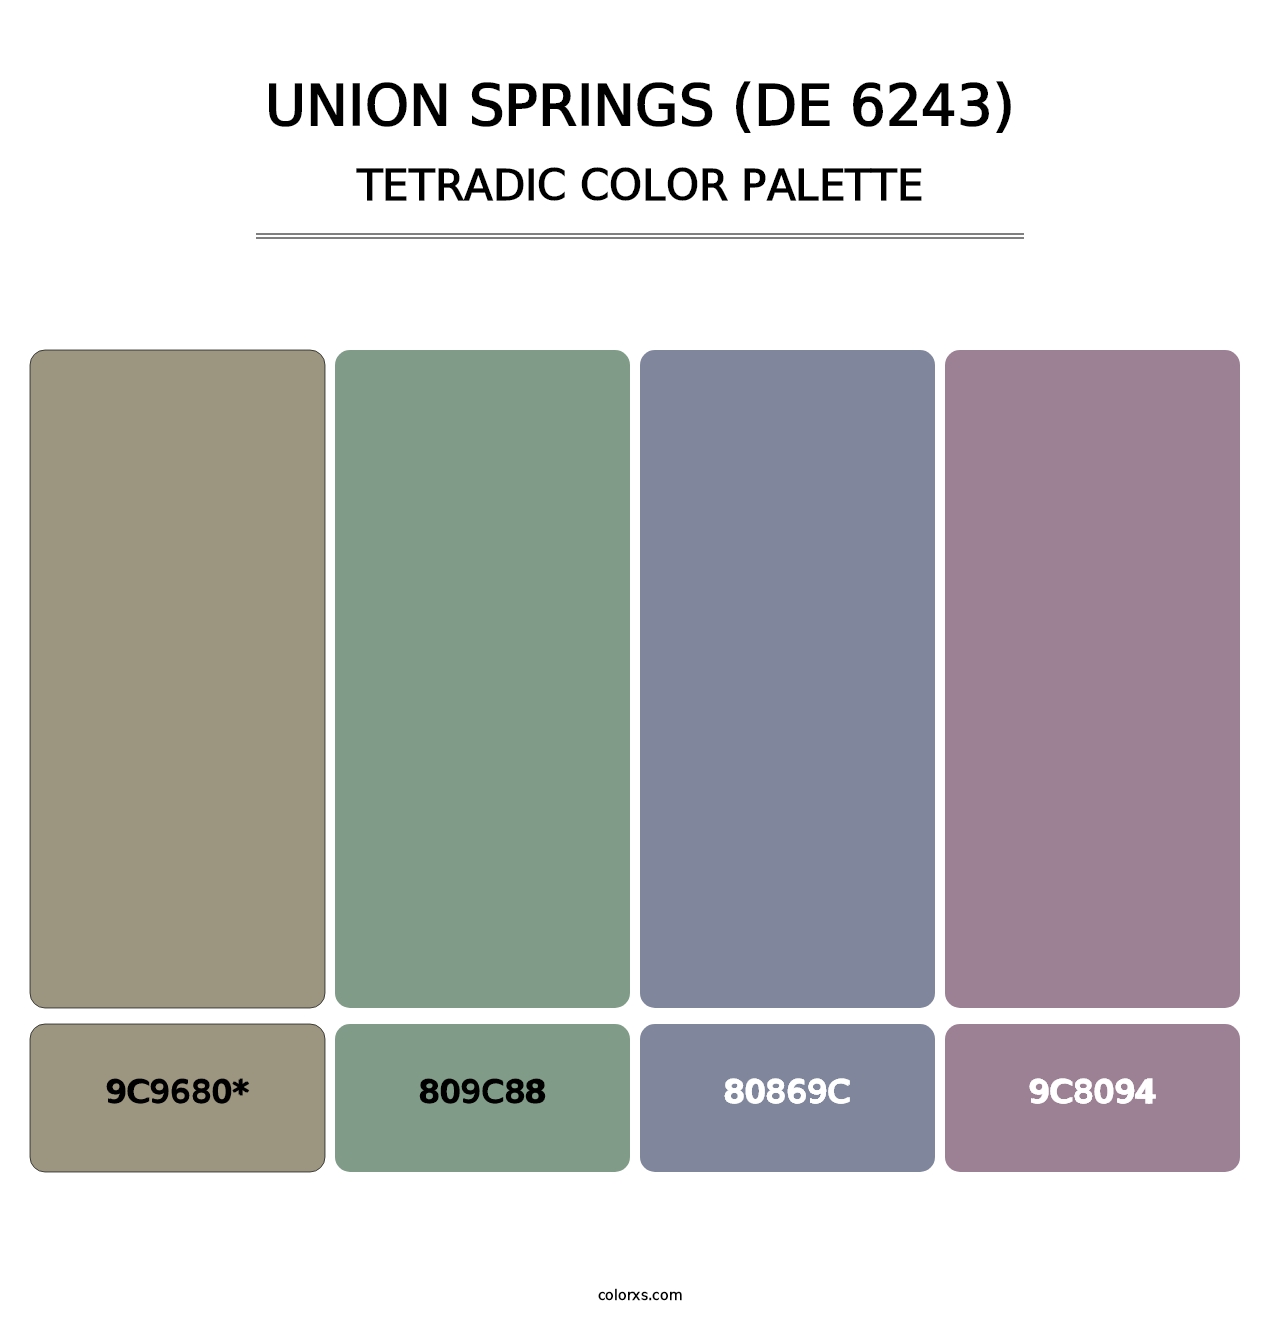 Union Springs (DE 6243) - Tetradic Color Palette